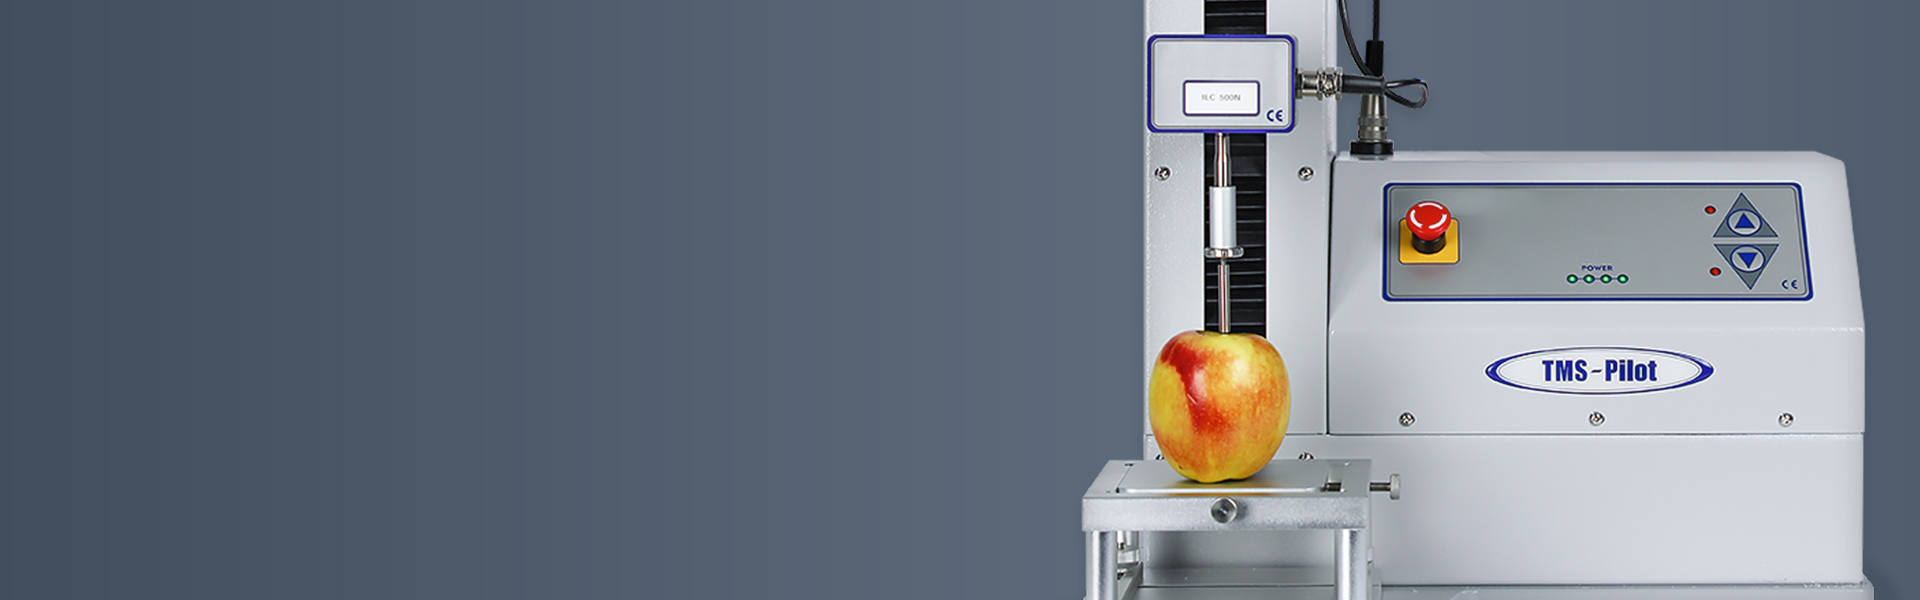 เครื่องวิเคราะห์พื้นผิวทำงานอย่างไร ระบบการวัดพื้นผิวทดสอบเนื้อแอปเปิ้ล